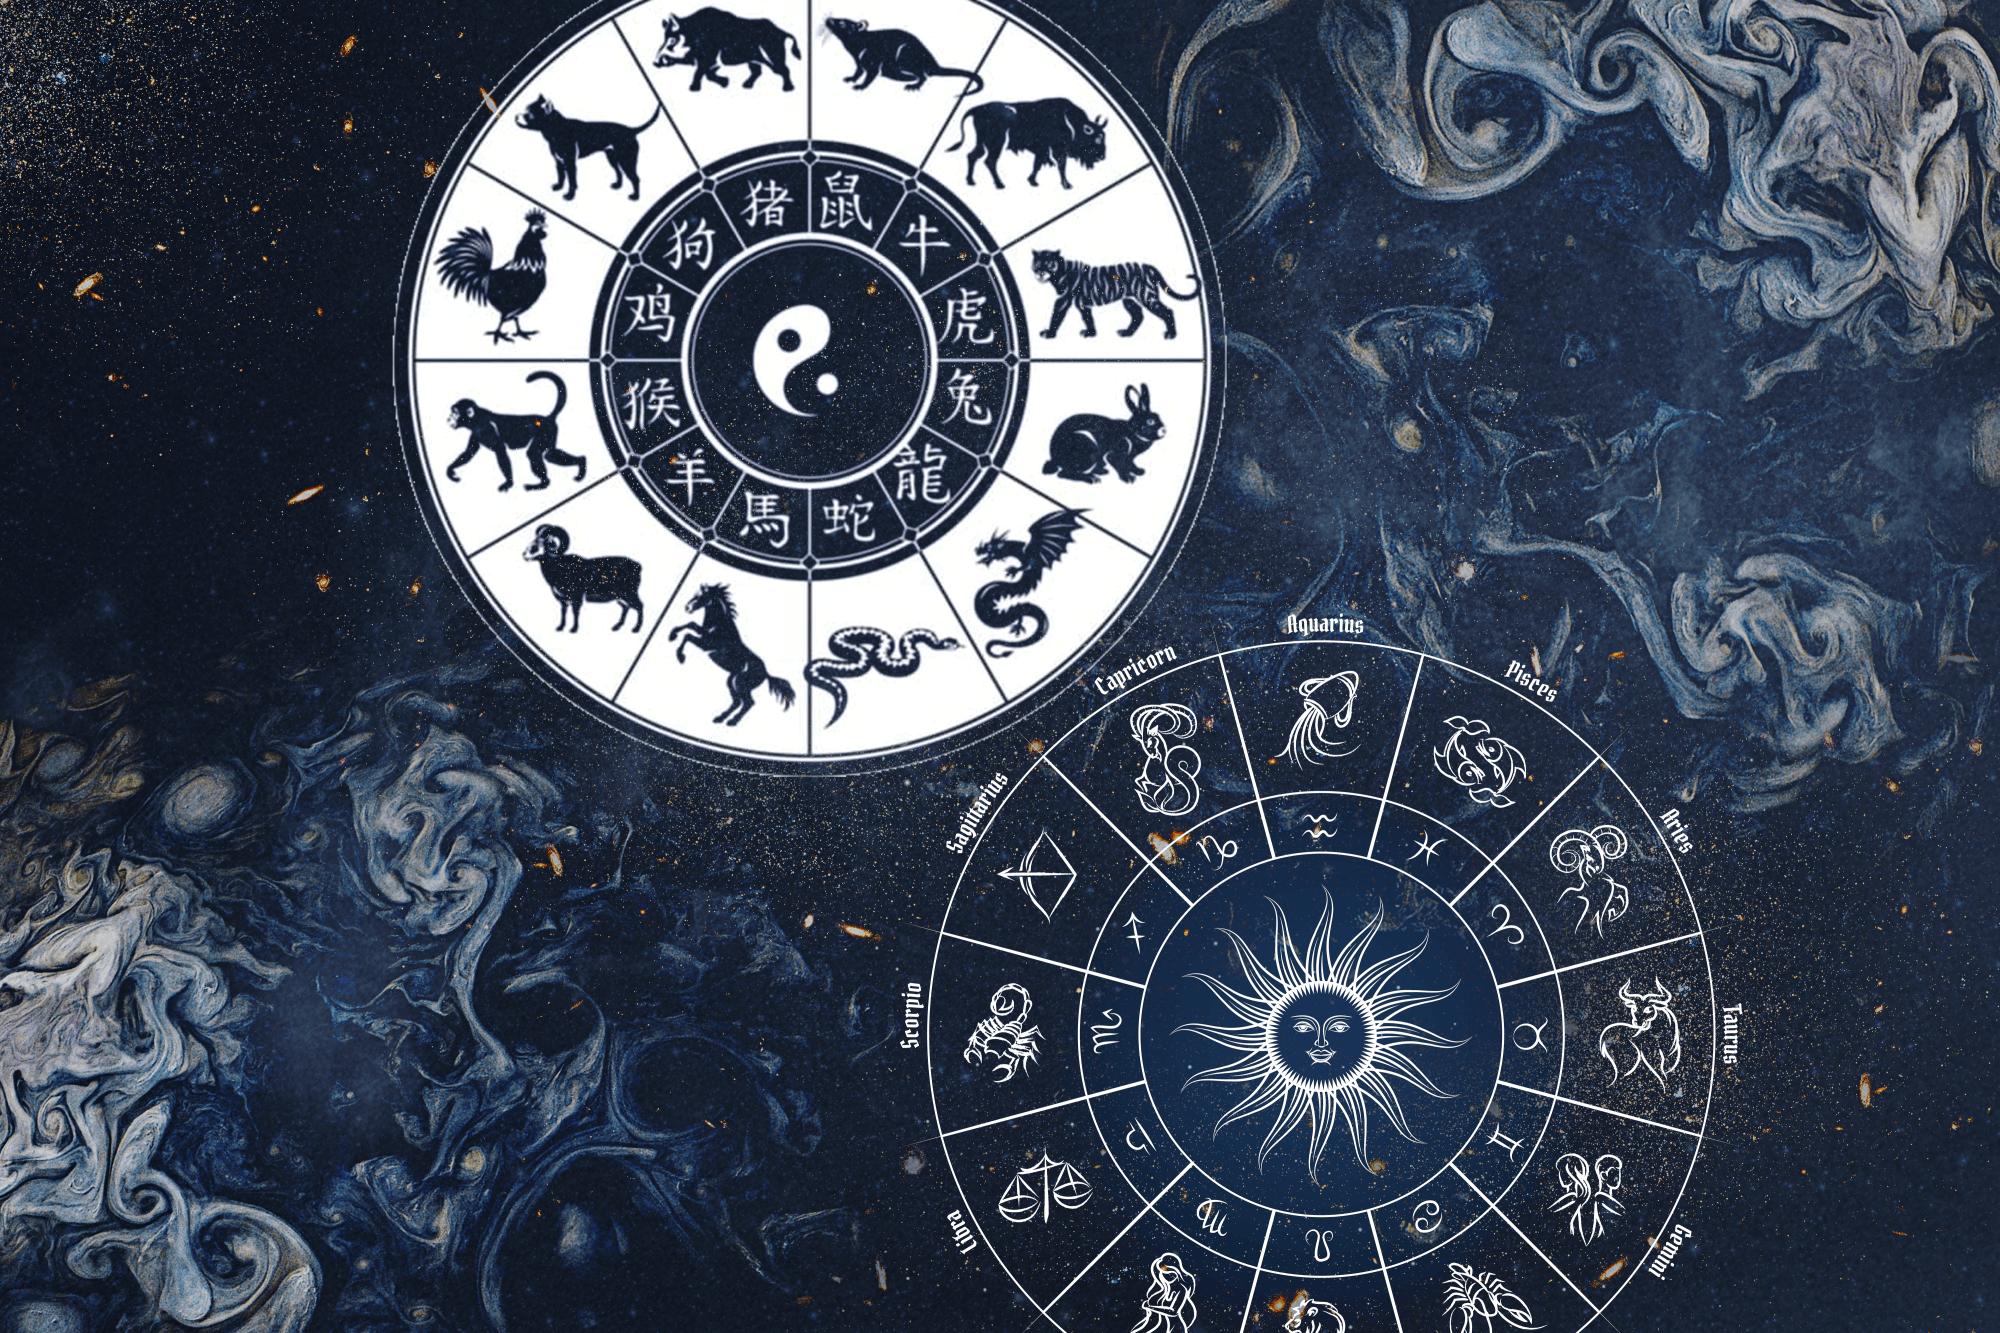 Signos zodiacales: ¿cuáles son más acertados, los chinos o los occidentales?